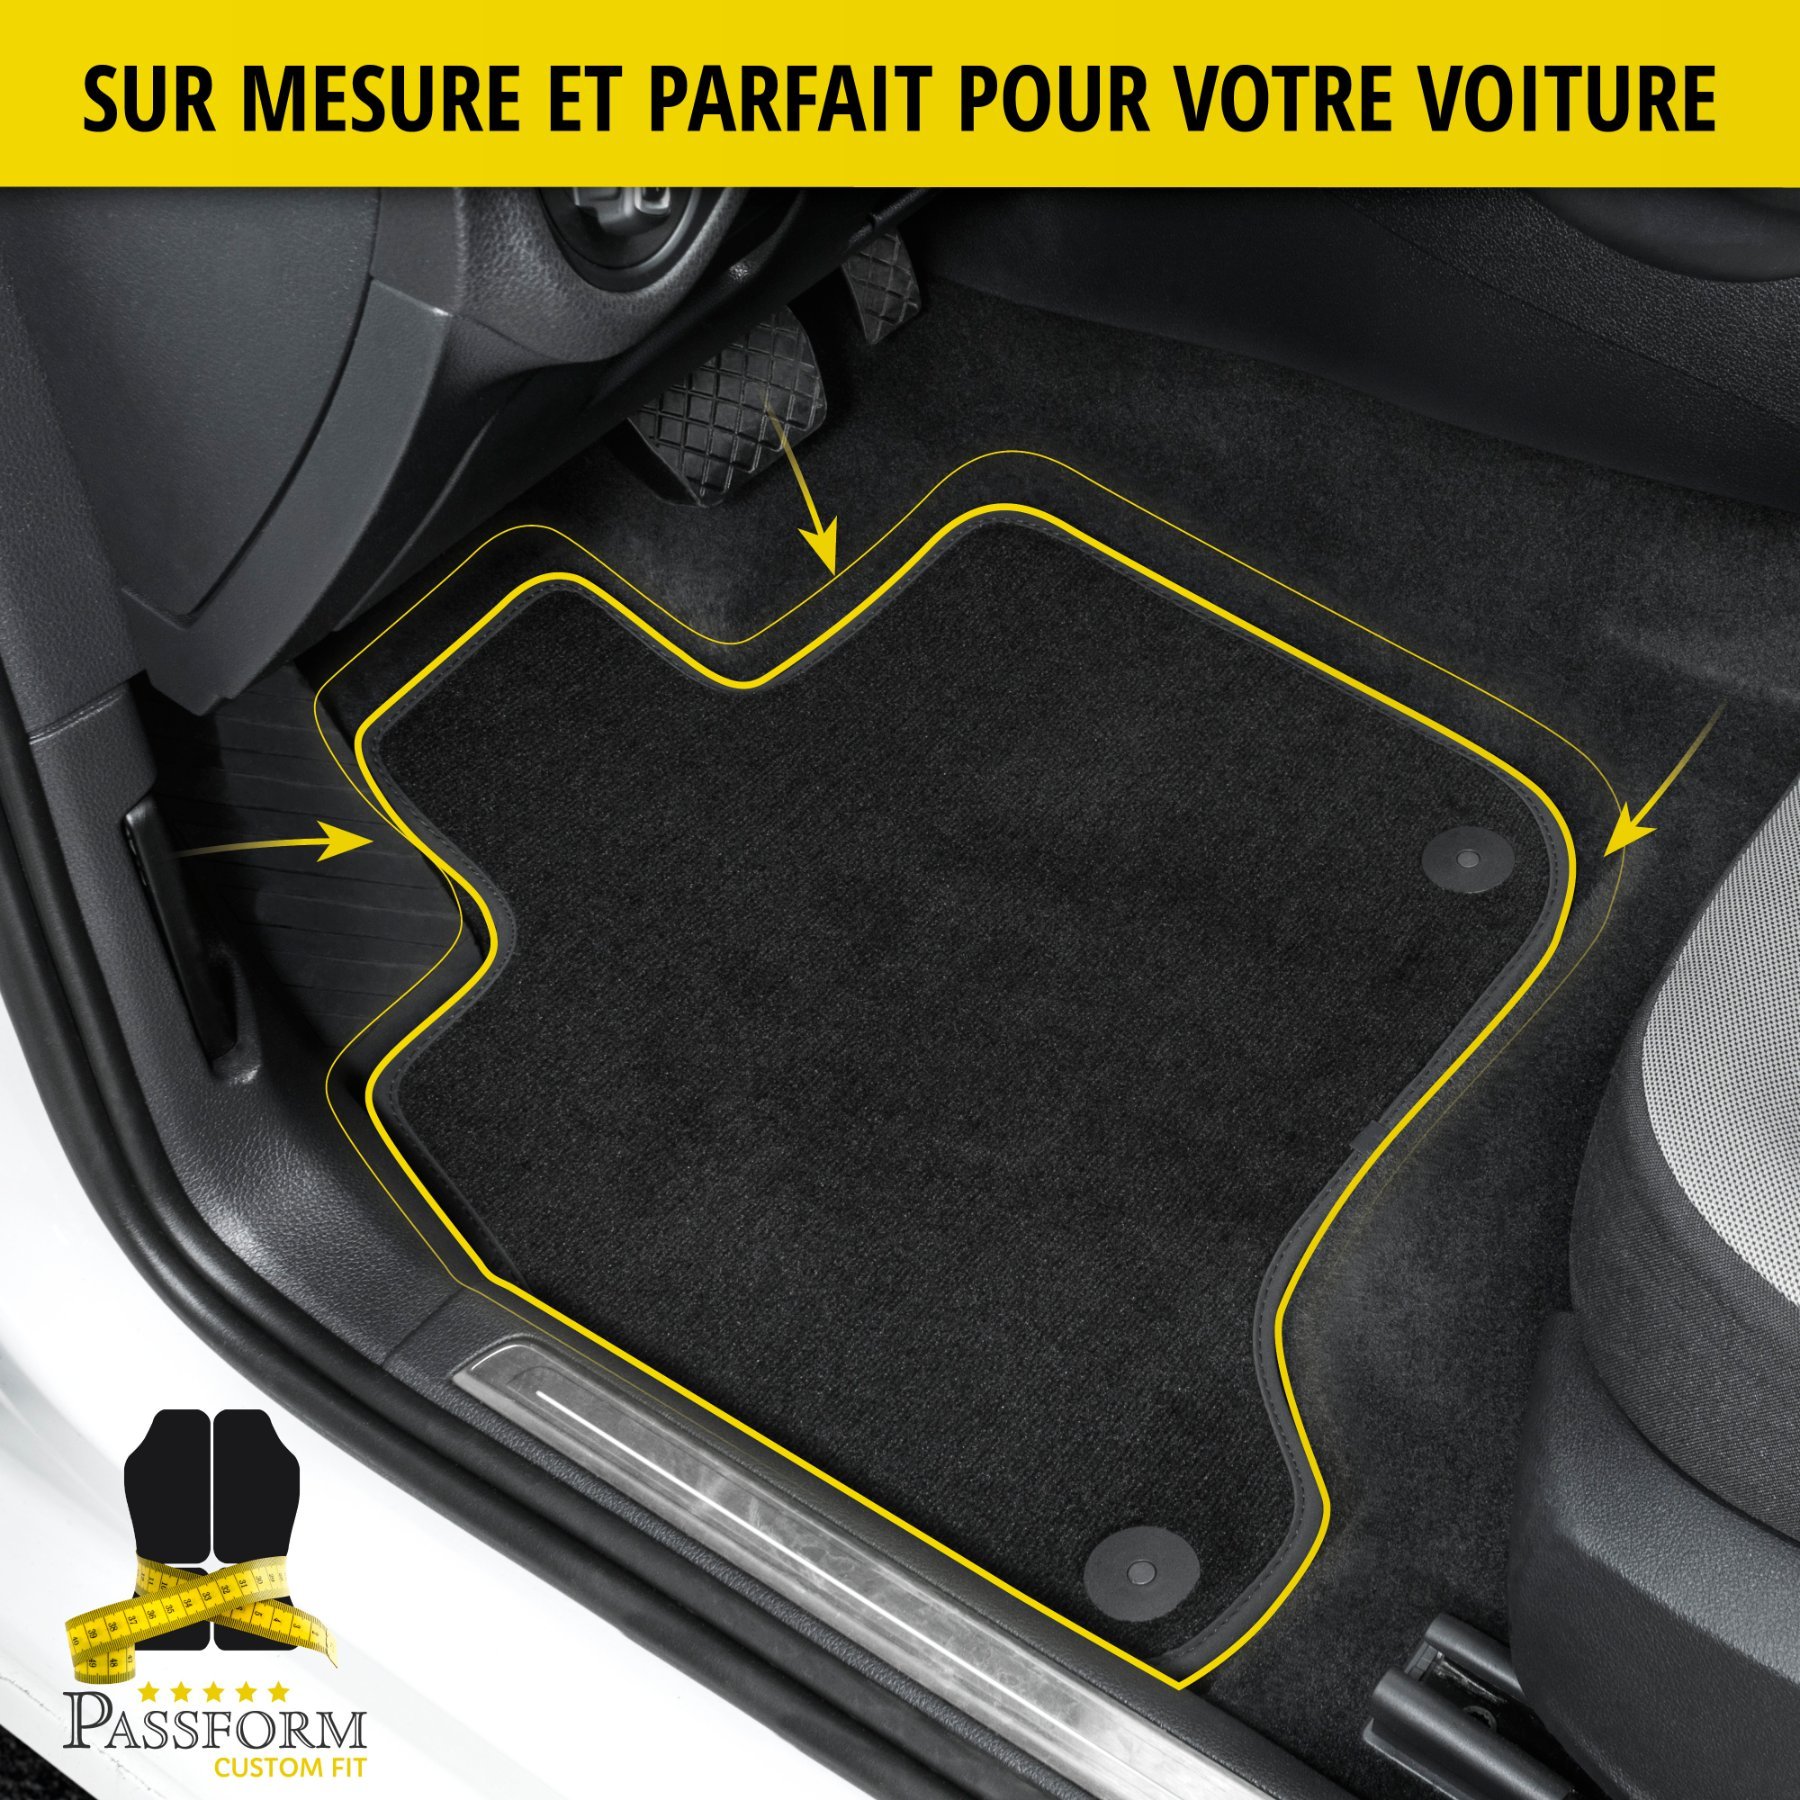 Tapis de sol de qualité supérieure pour Renault Mégane, Mégane Grand Tour